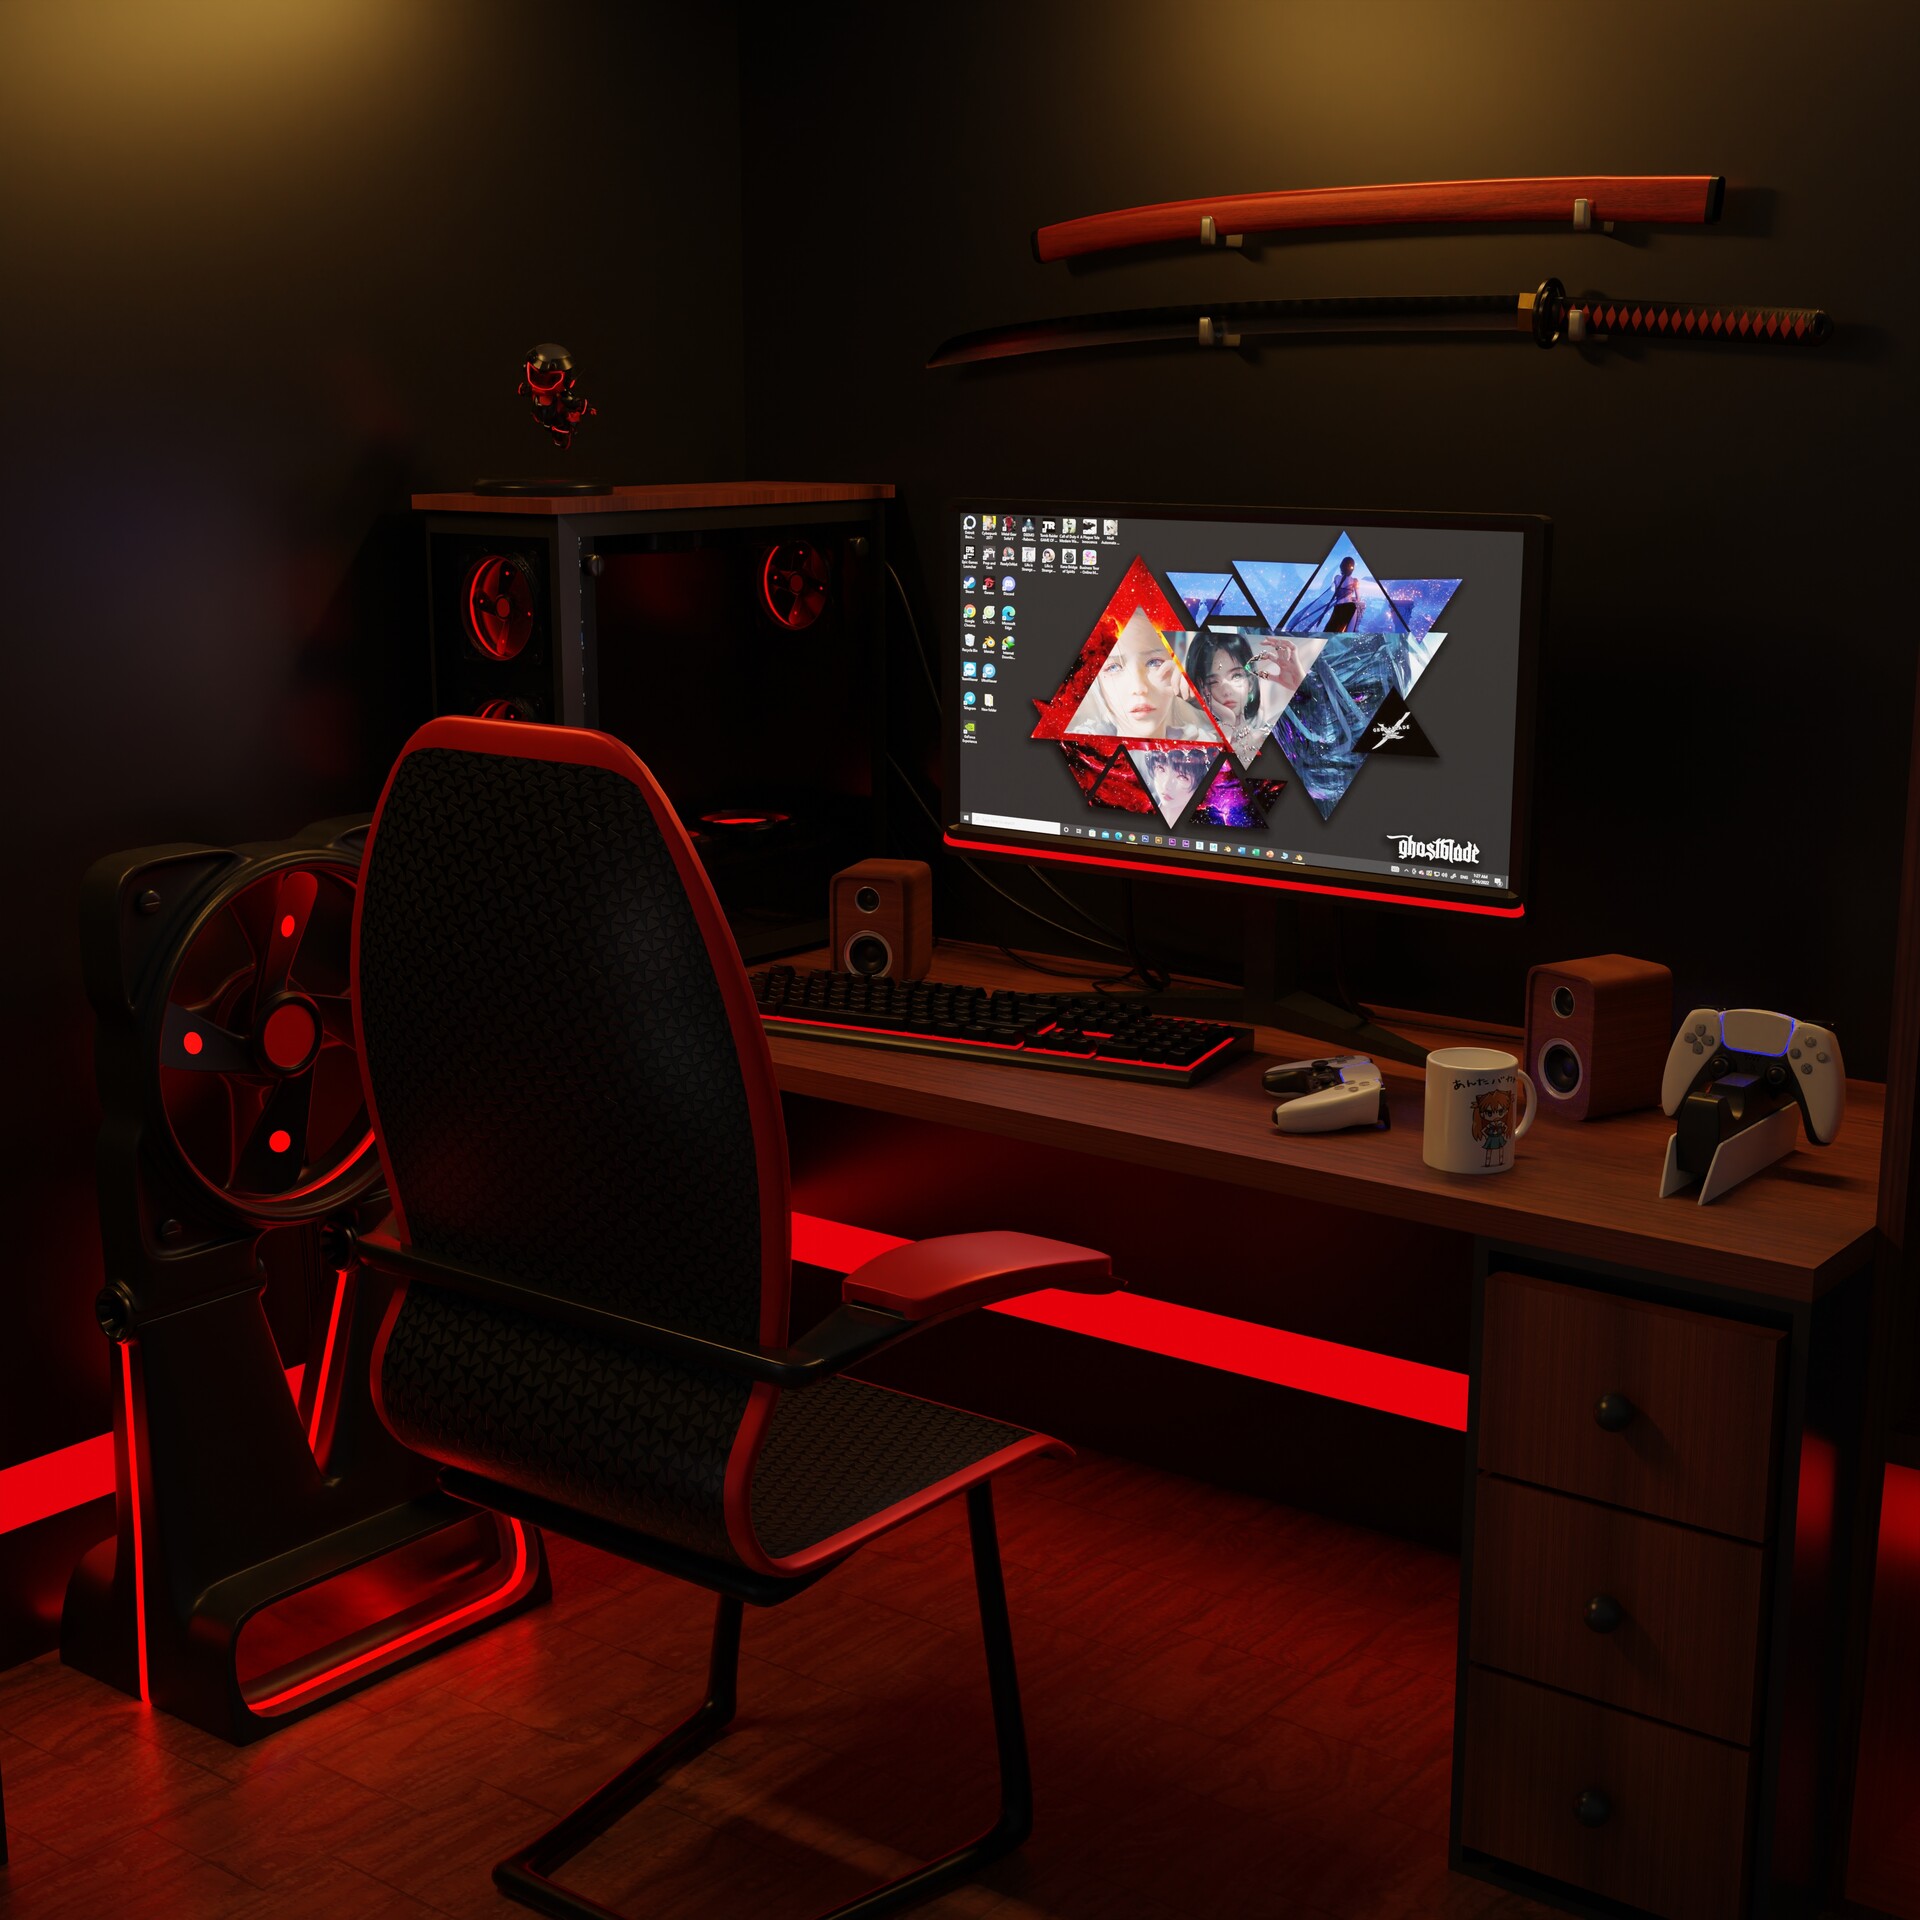 ArtStation - Gaming's room